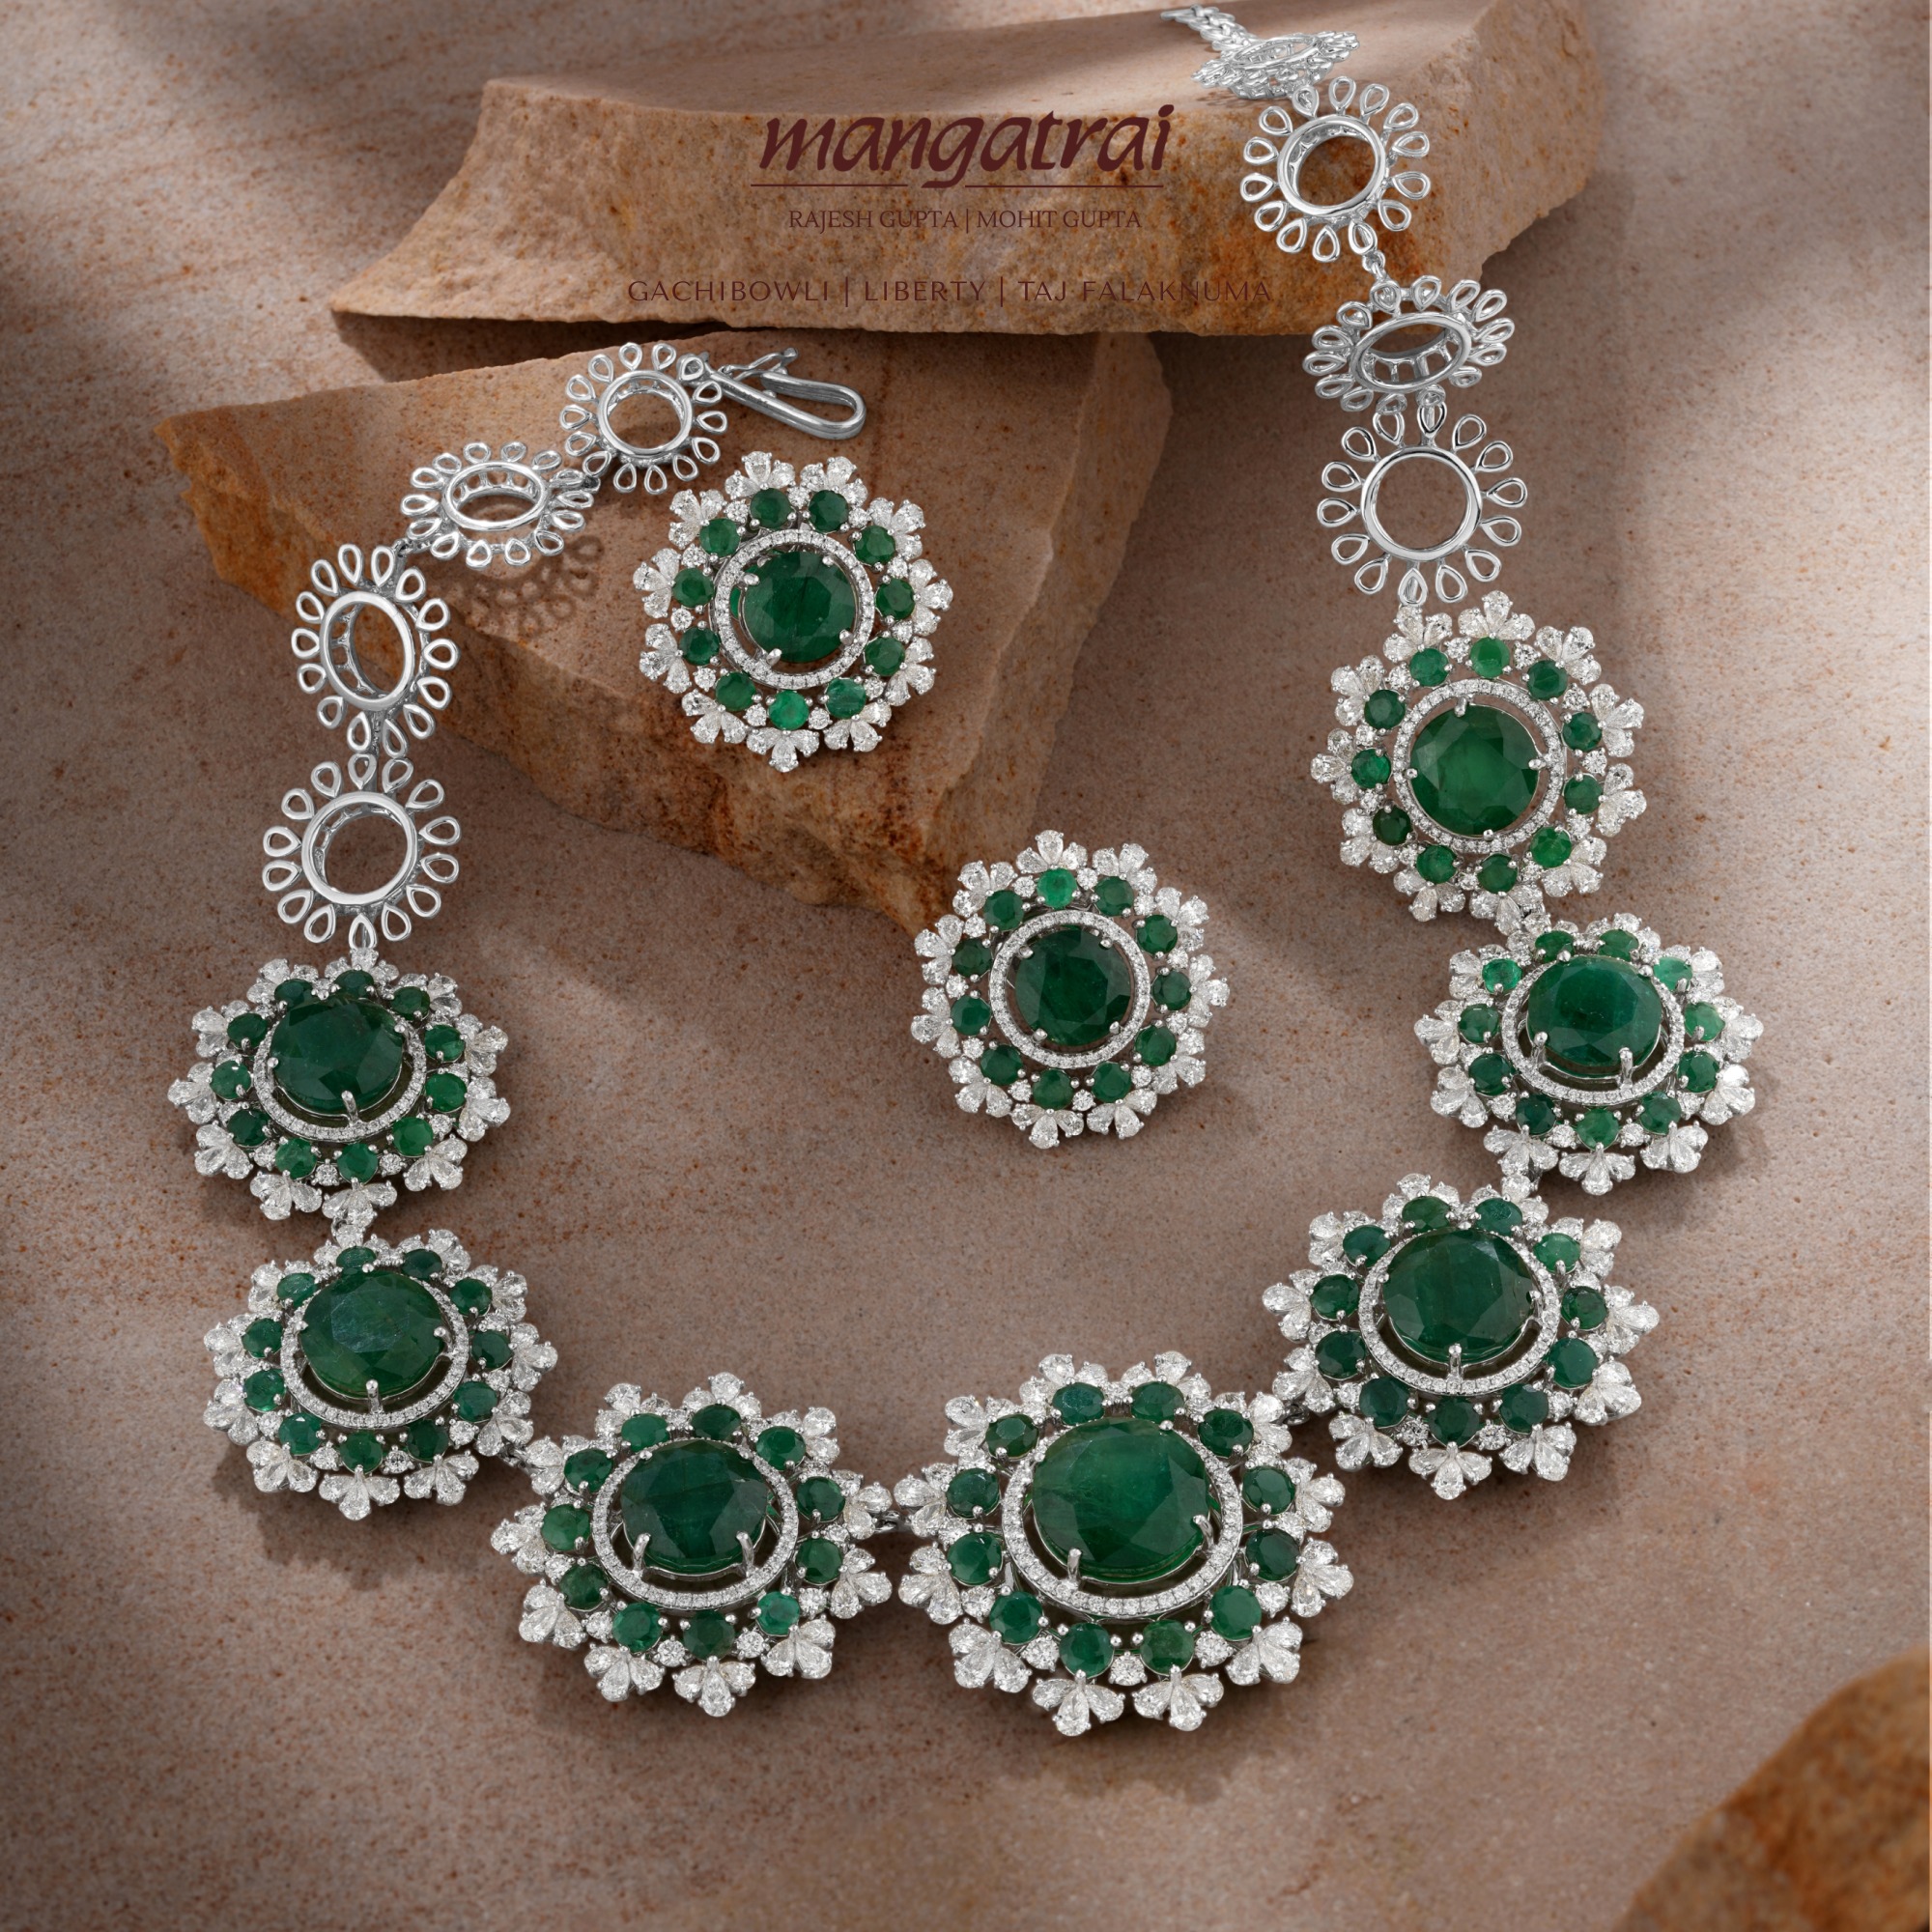 Diamond Necklace Sets From 'Mangatrai Jewels'